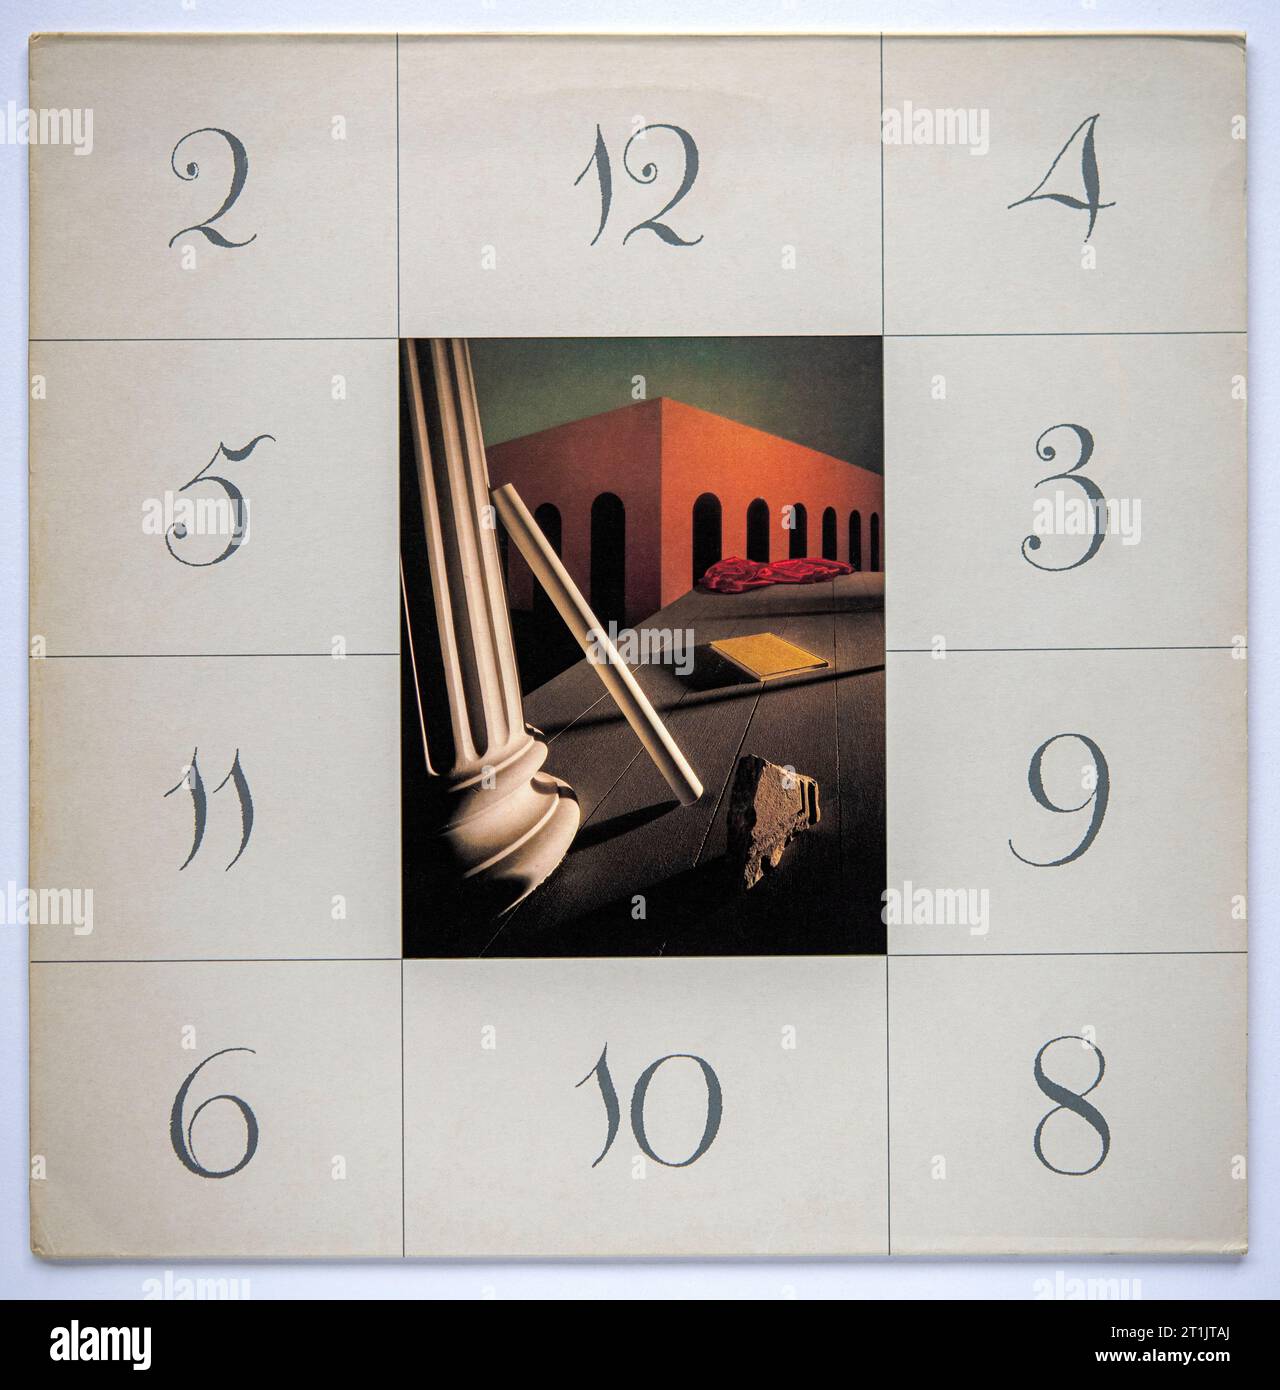 Couverture photo de la version single de 12 pouces de Thieves Like US par New Order, qui a été publié en 1984 Banque D'Images